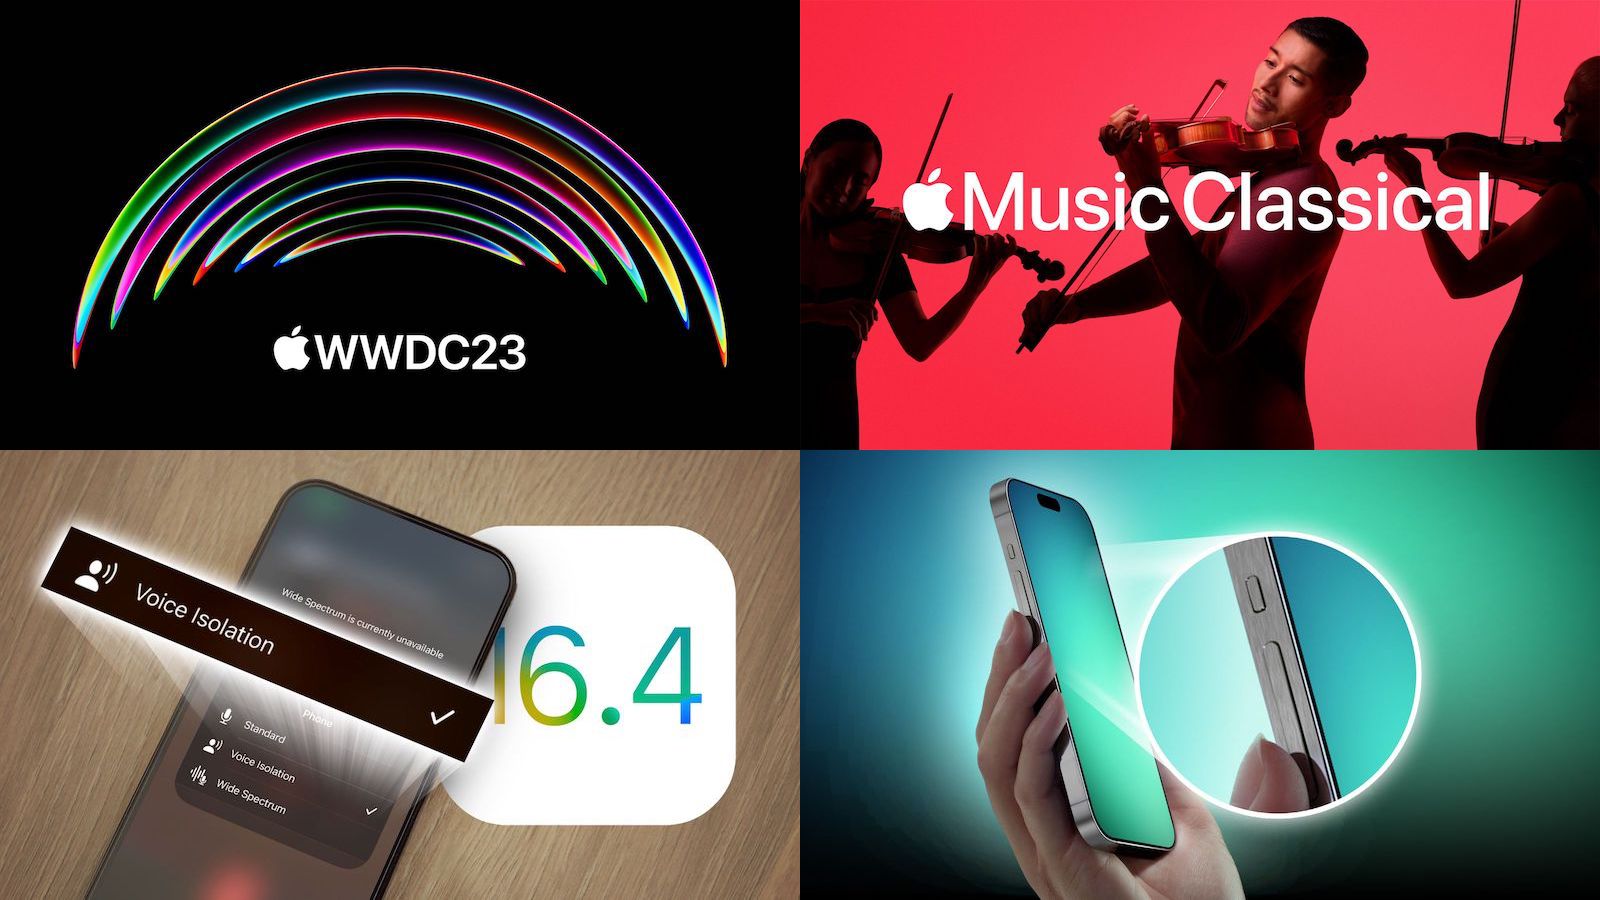 Veste mare: anunțul WWDC, lansarea iOS 16.4, Apple Music Classic este acum disponibil